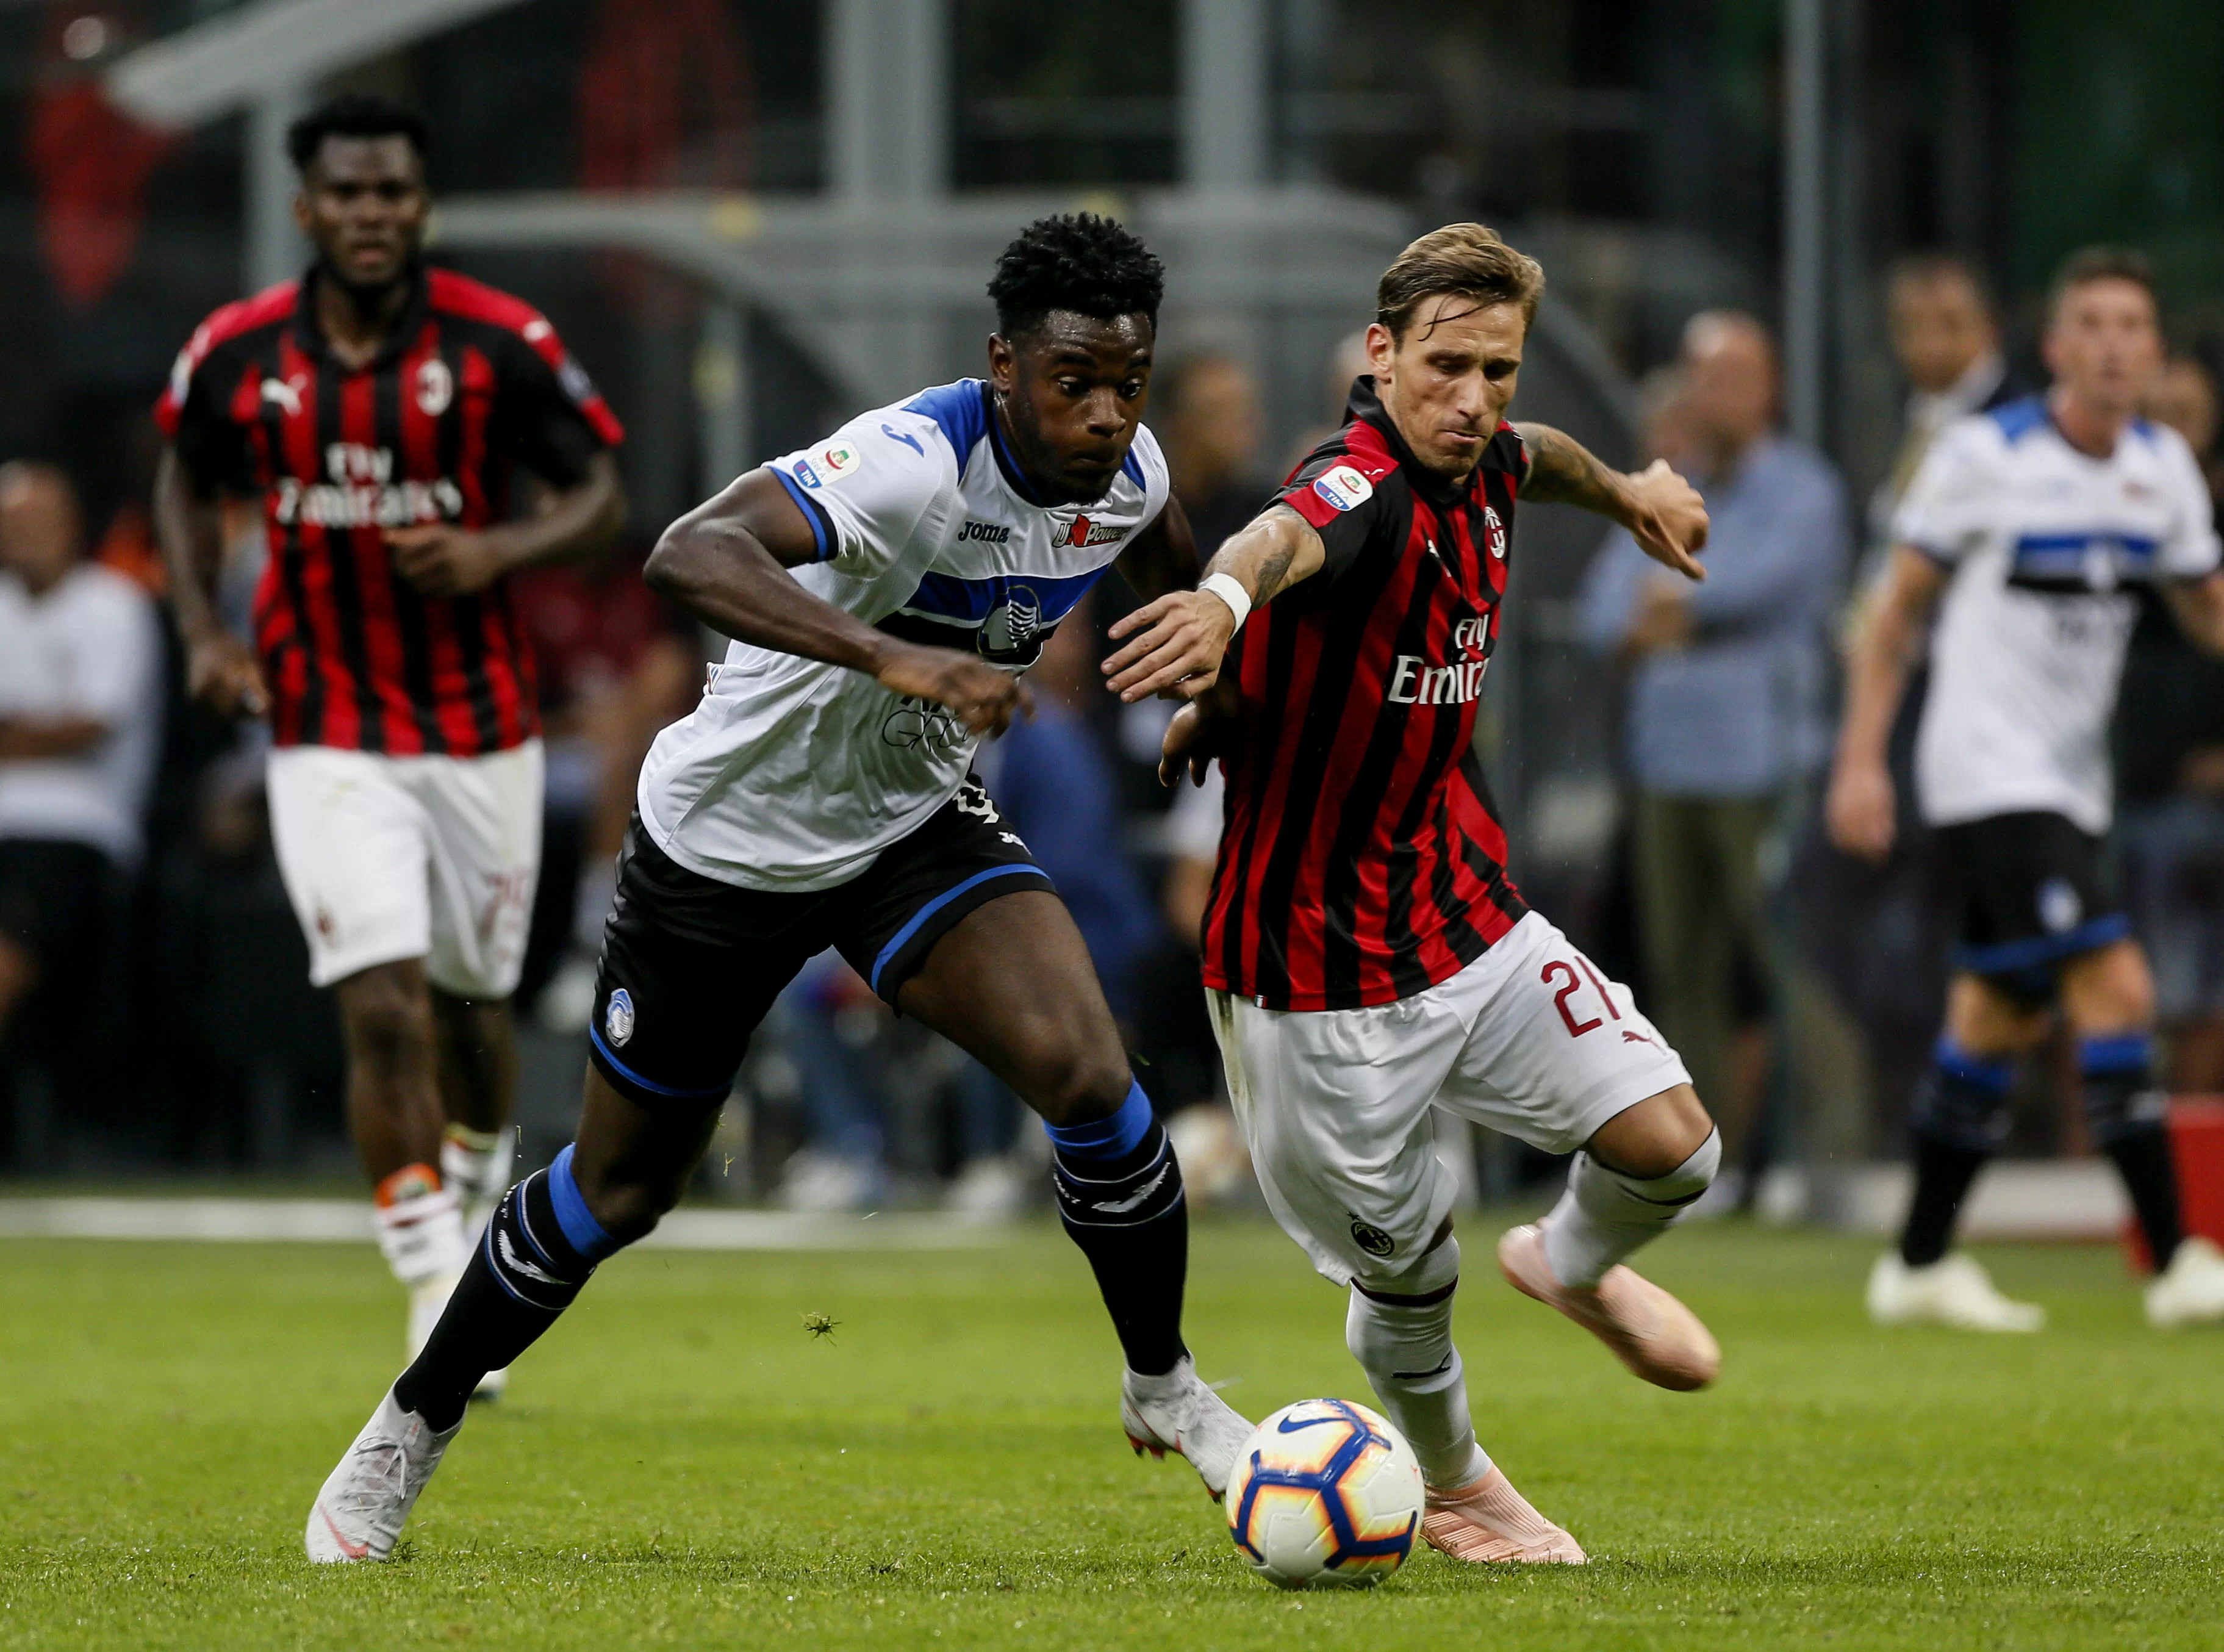 PUNTO TATTICO • Il Milan non si sa difendere: la squadra di Gattuso soffre quando deve congelare la partita